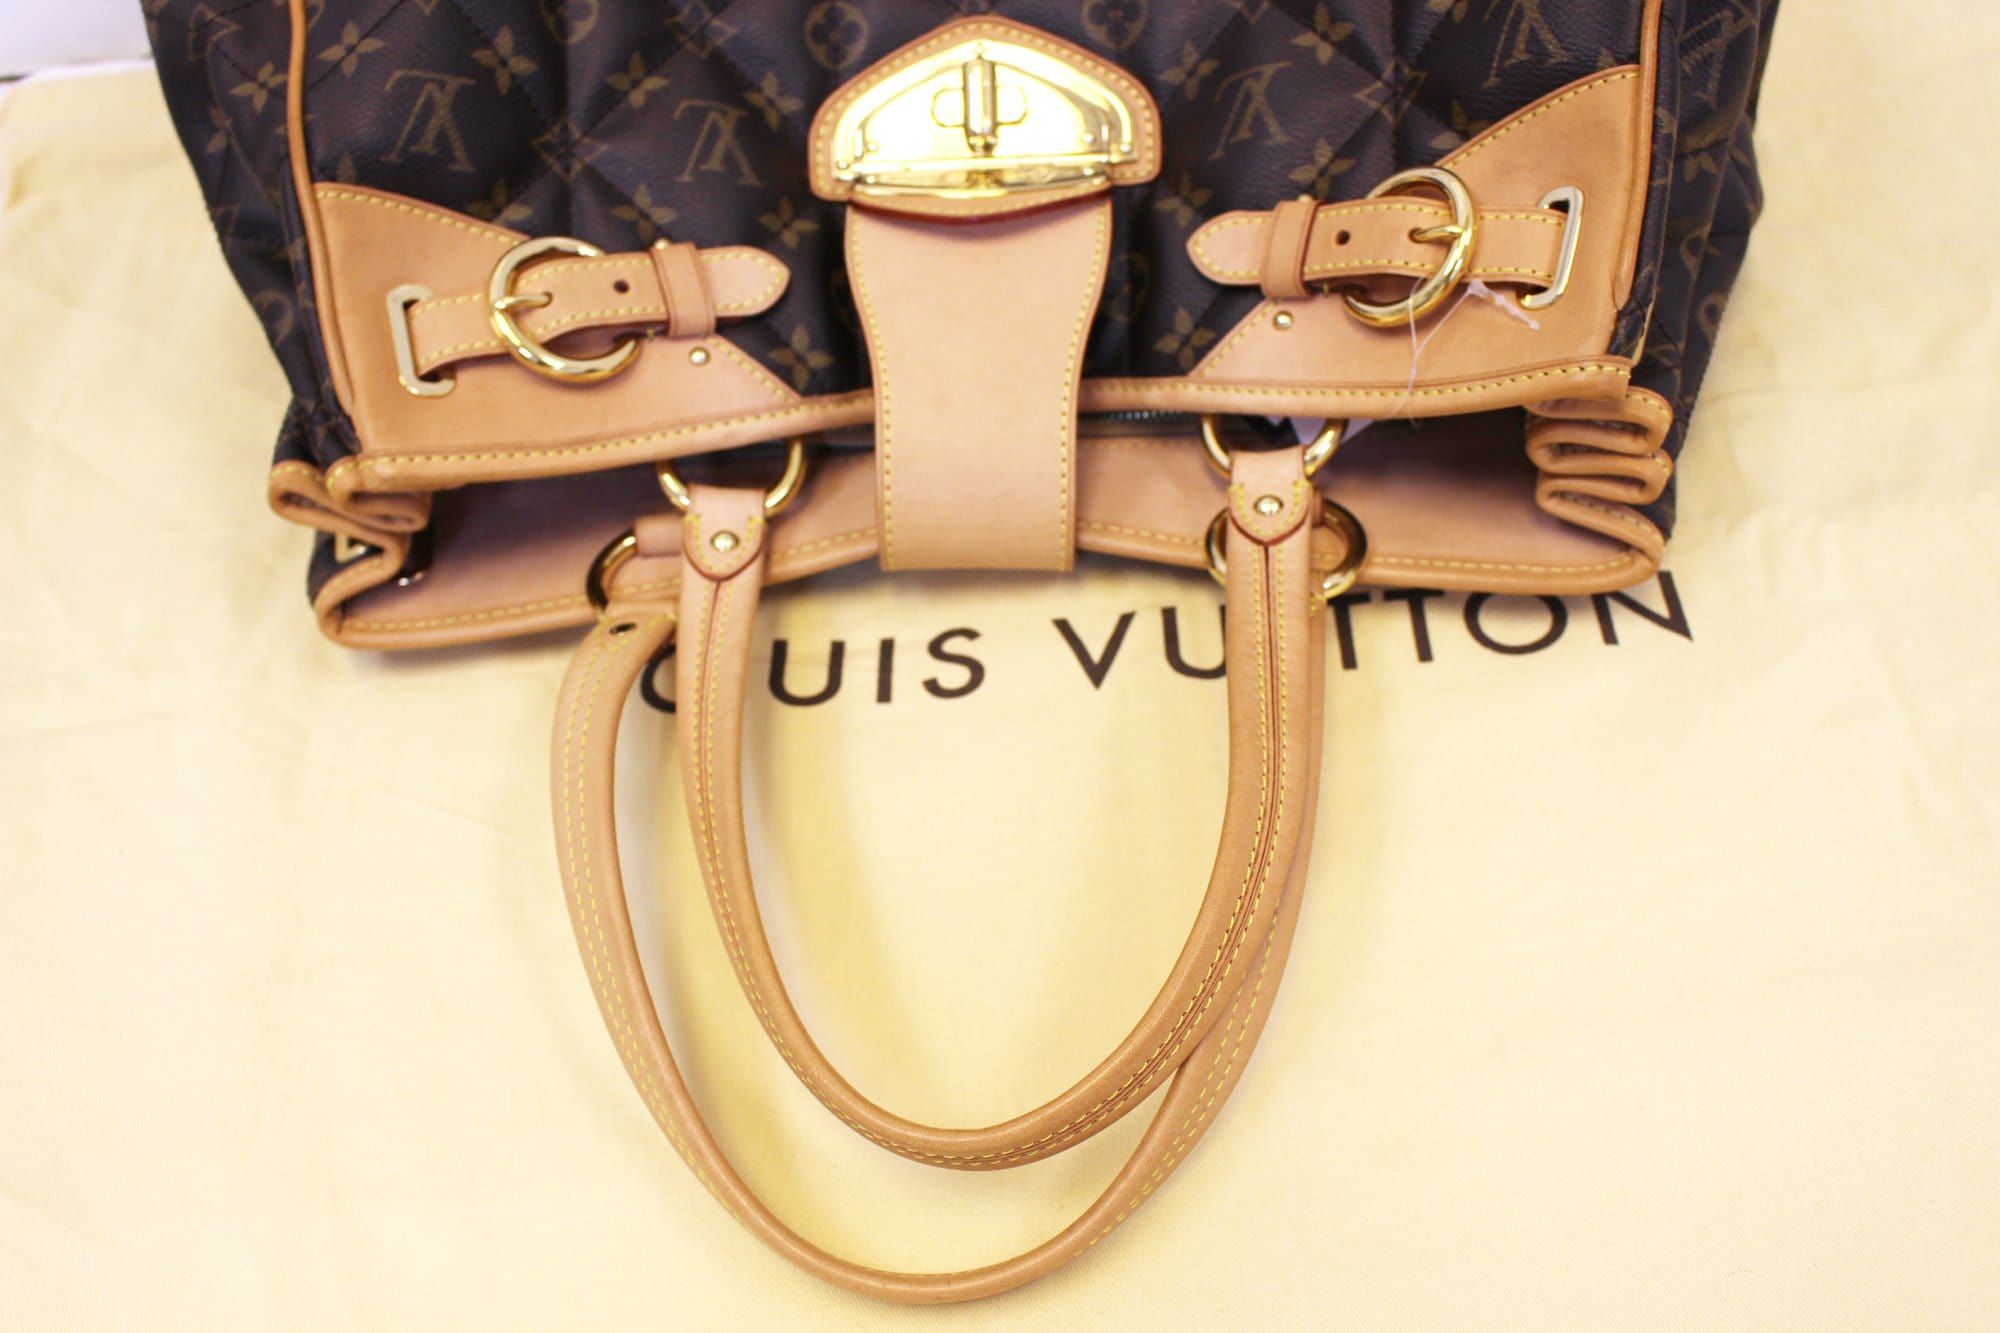 Louis Vuitton M41453 Etoile City Pm Monogram Coated Canvas Bag